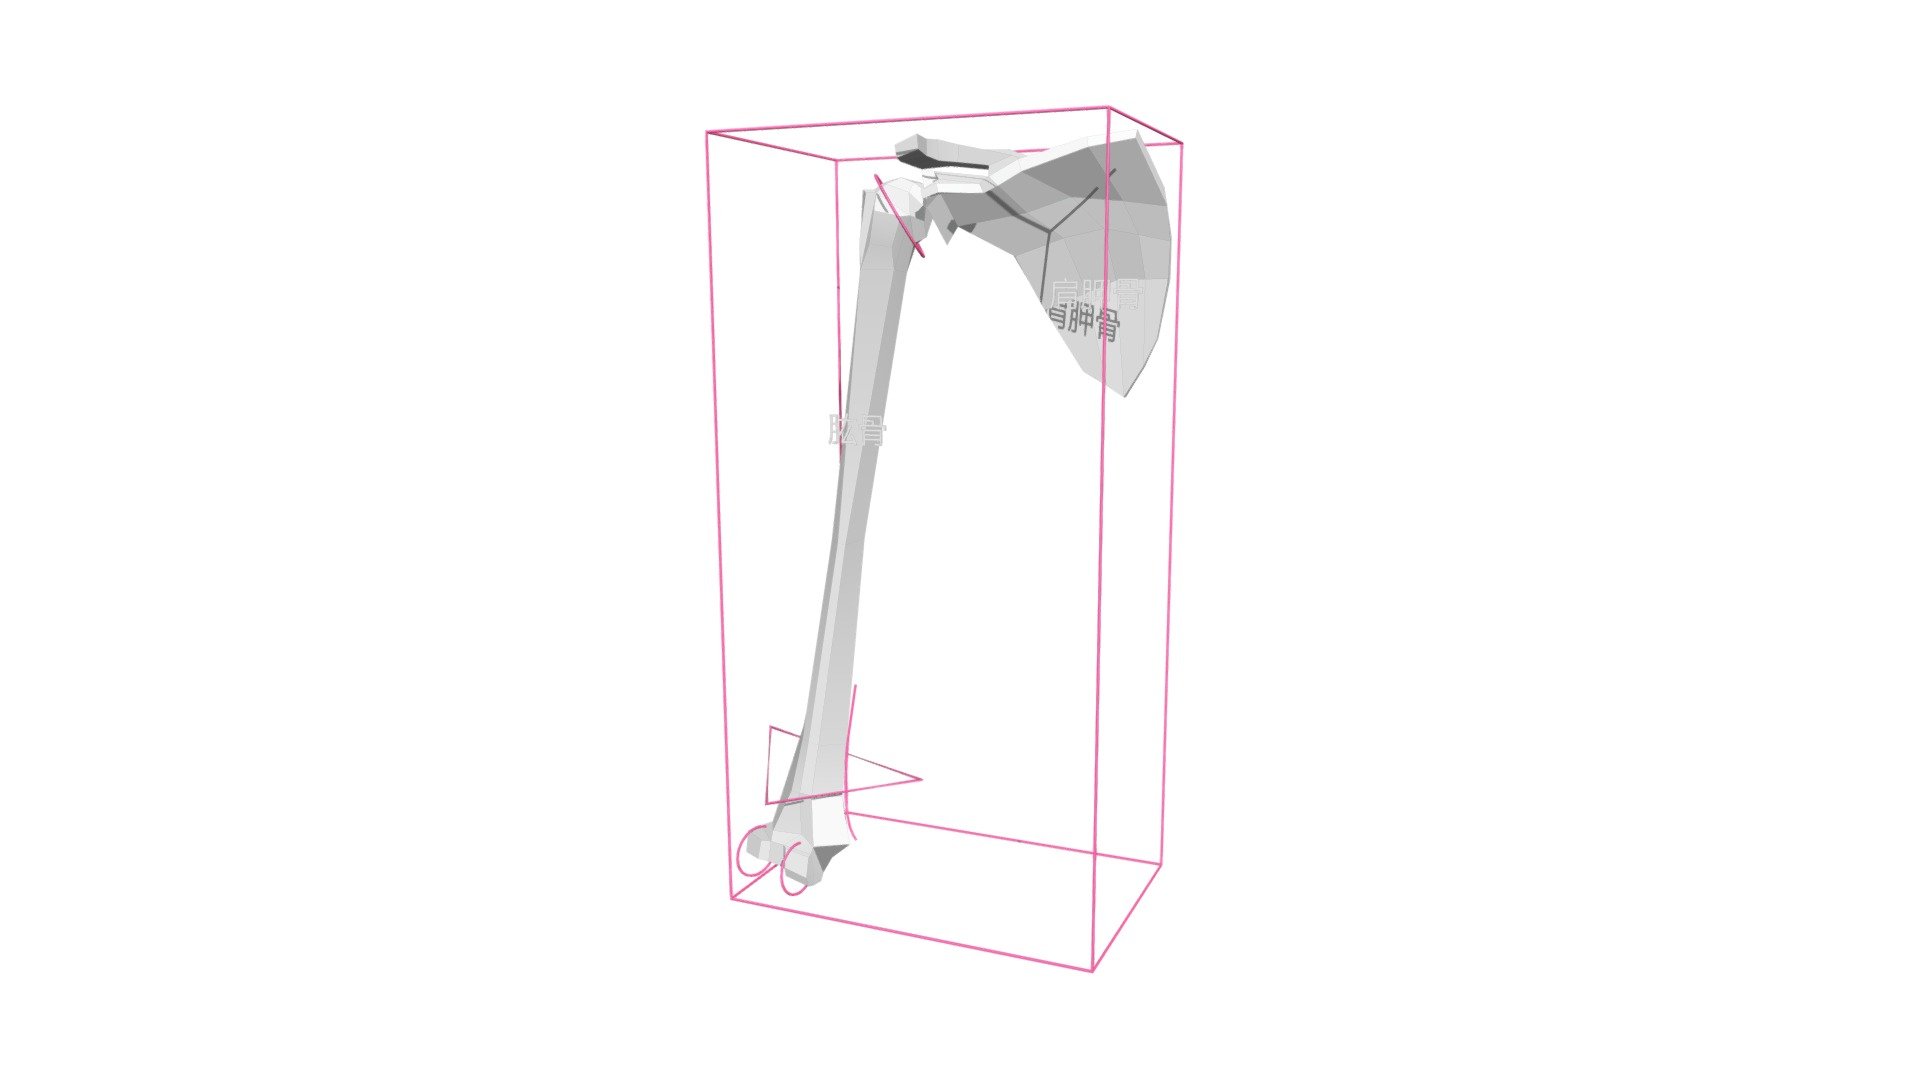 大臂结构概括 - 3D model by 雕塑笔记 (@diaosubiji) 3d model